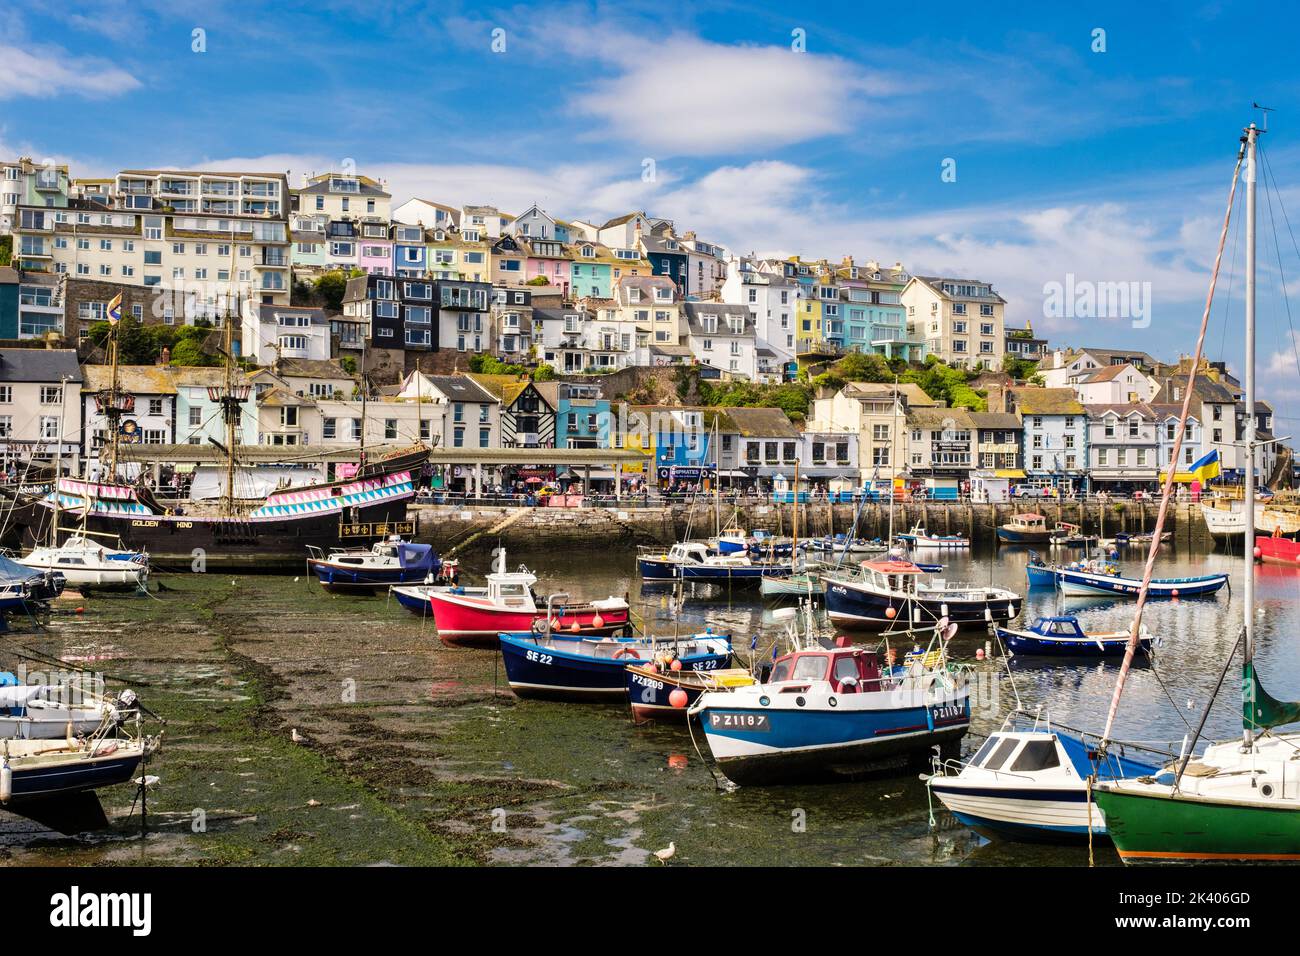 Farbenfrohe Häuser und Geschäfte mit Blick auf den Innenhafen und kleinen Booten, die vor Anker liegen. Brixham, Devon, England, Großbritannien Stockfoto